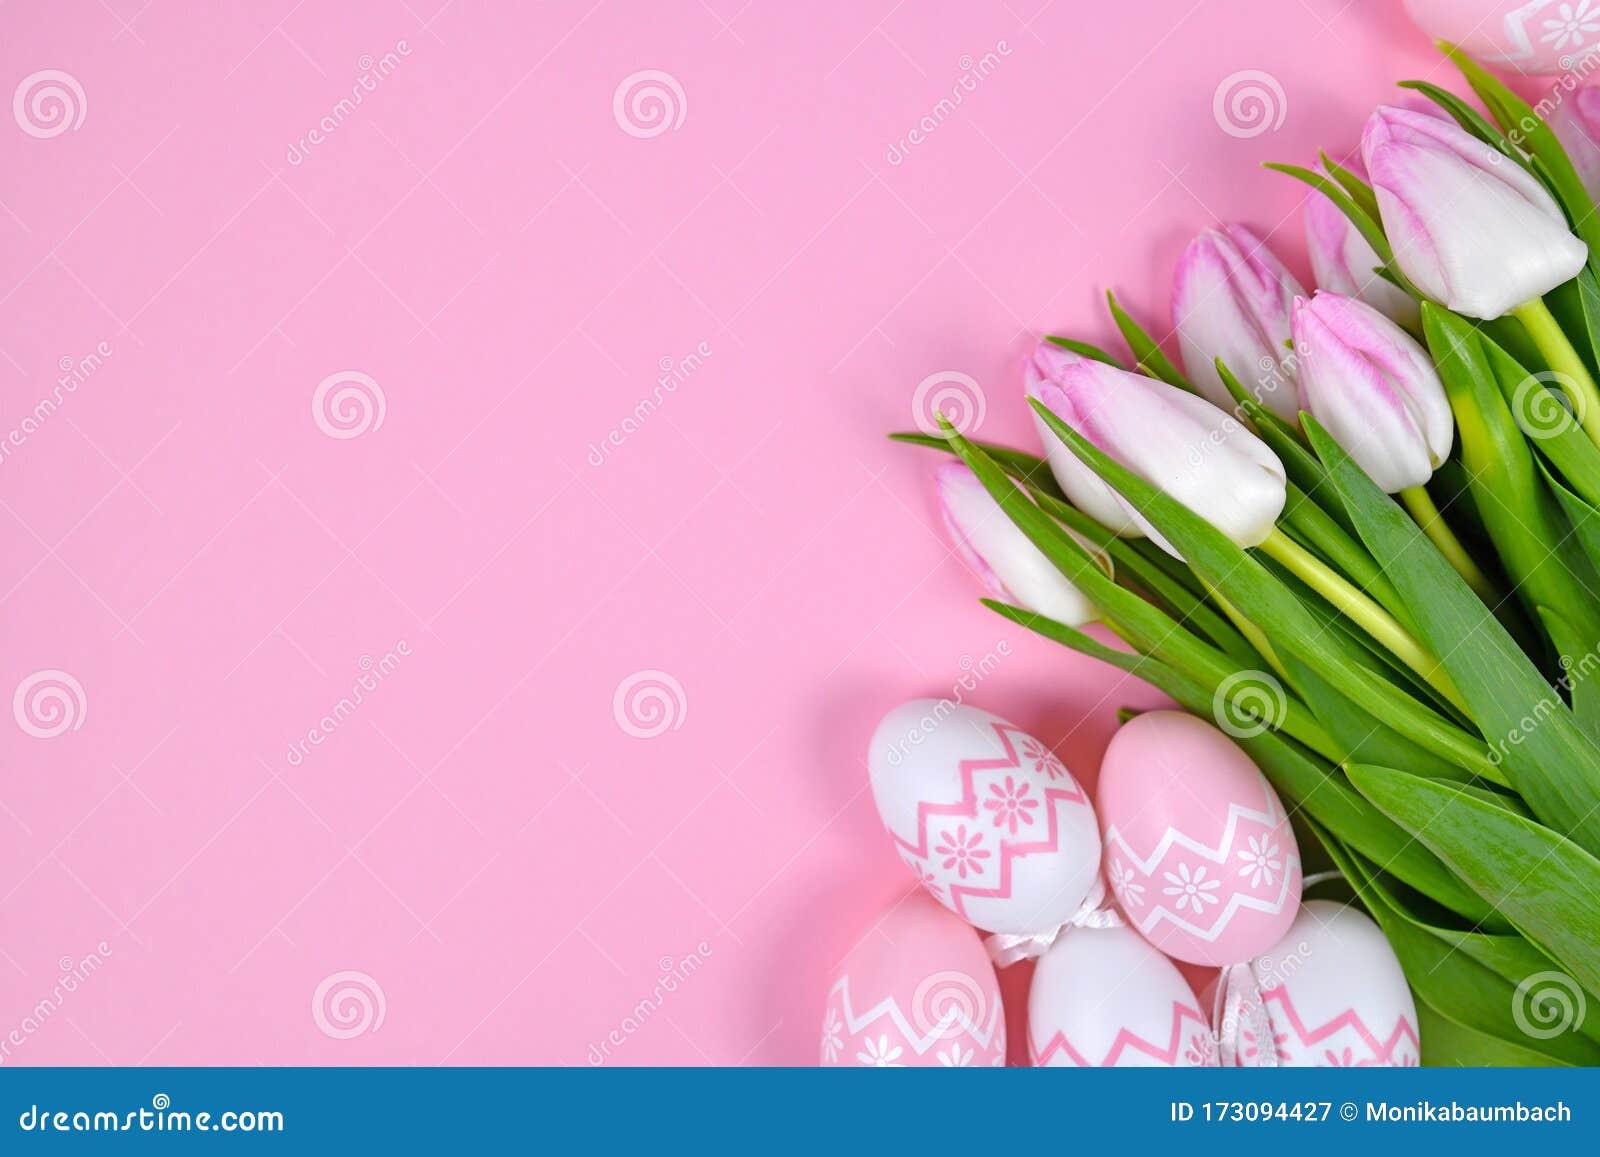 Bó hoa tulip trắng là một trong những biểu tượng của tình yêu và trang trọng trong các buổi lễ. Hãy được chiêm ngưỡng vẻ đẹp tuyệt vời của bó hoa tulip trắng thông qua các hình ảnh kết nối với từ khóa này.